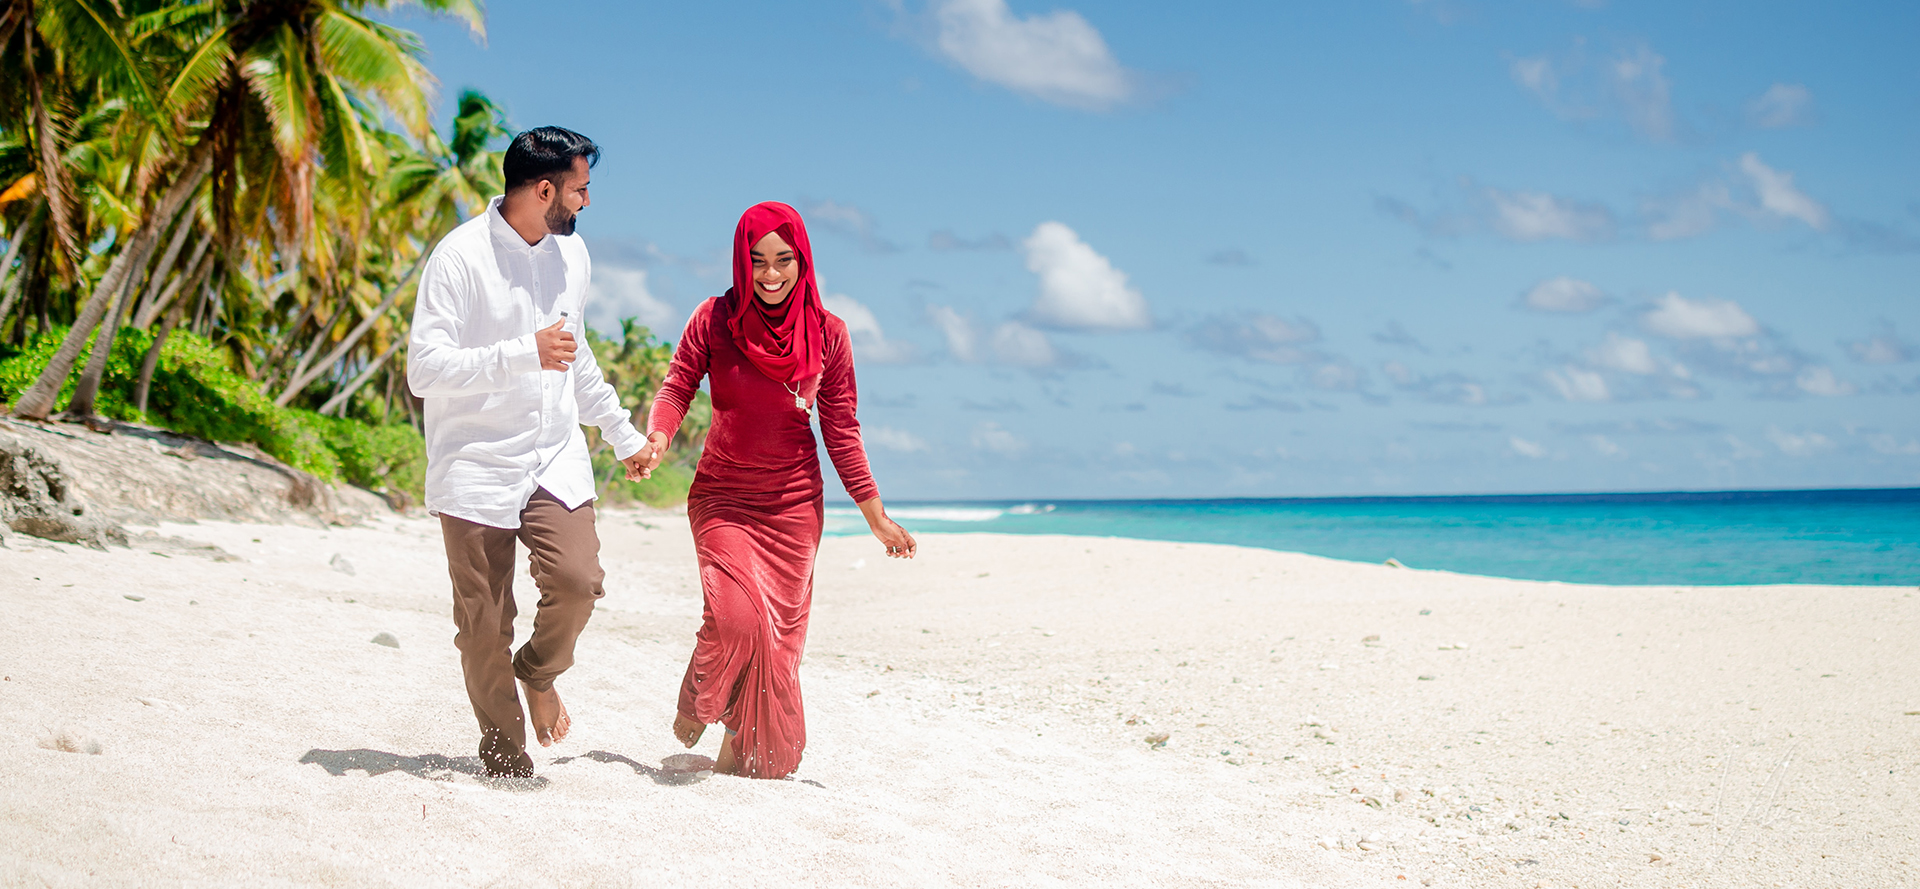 Arabische Singles bei einem Date schlendern am Strand entlang.